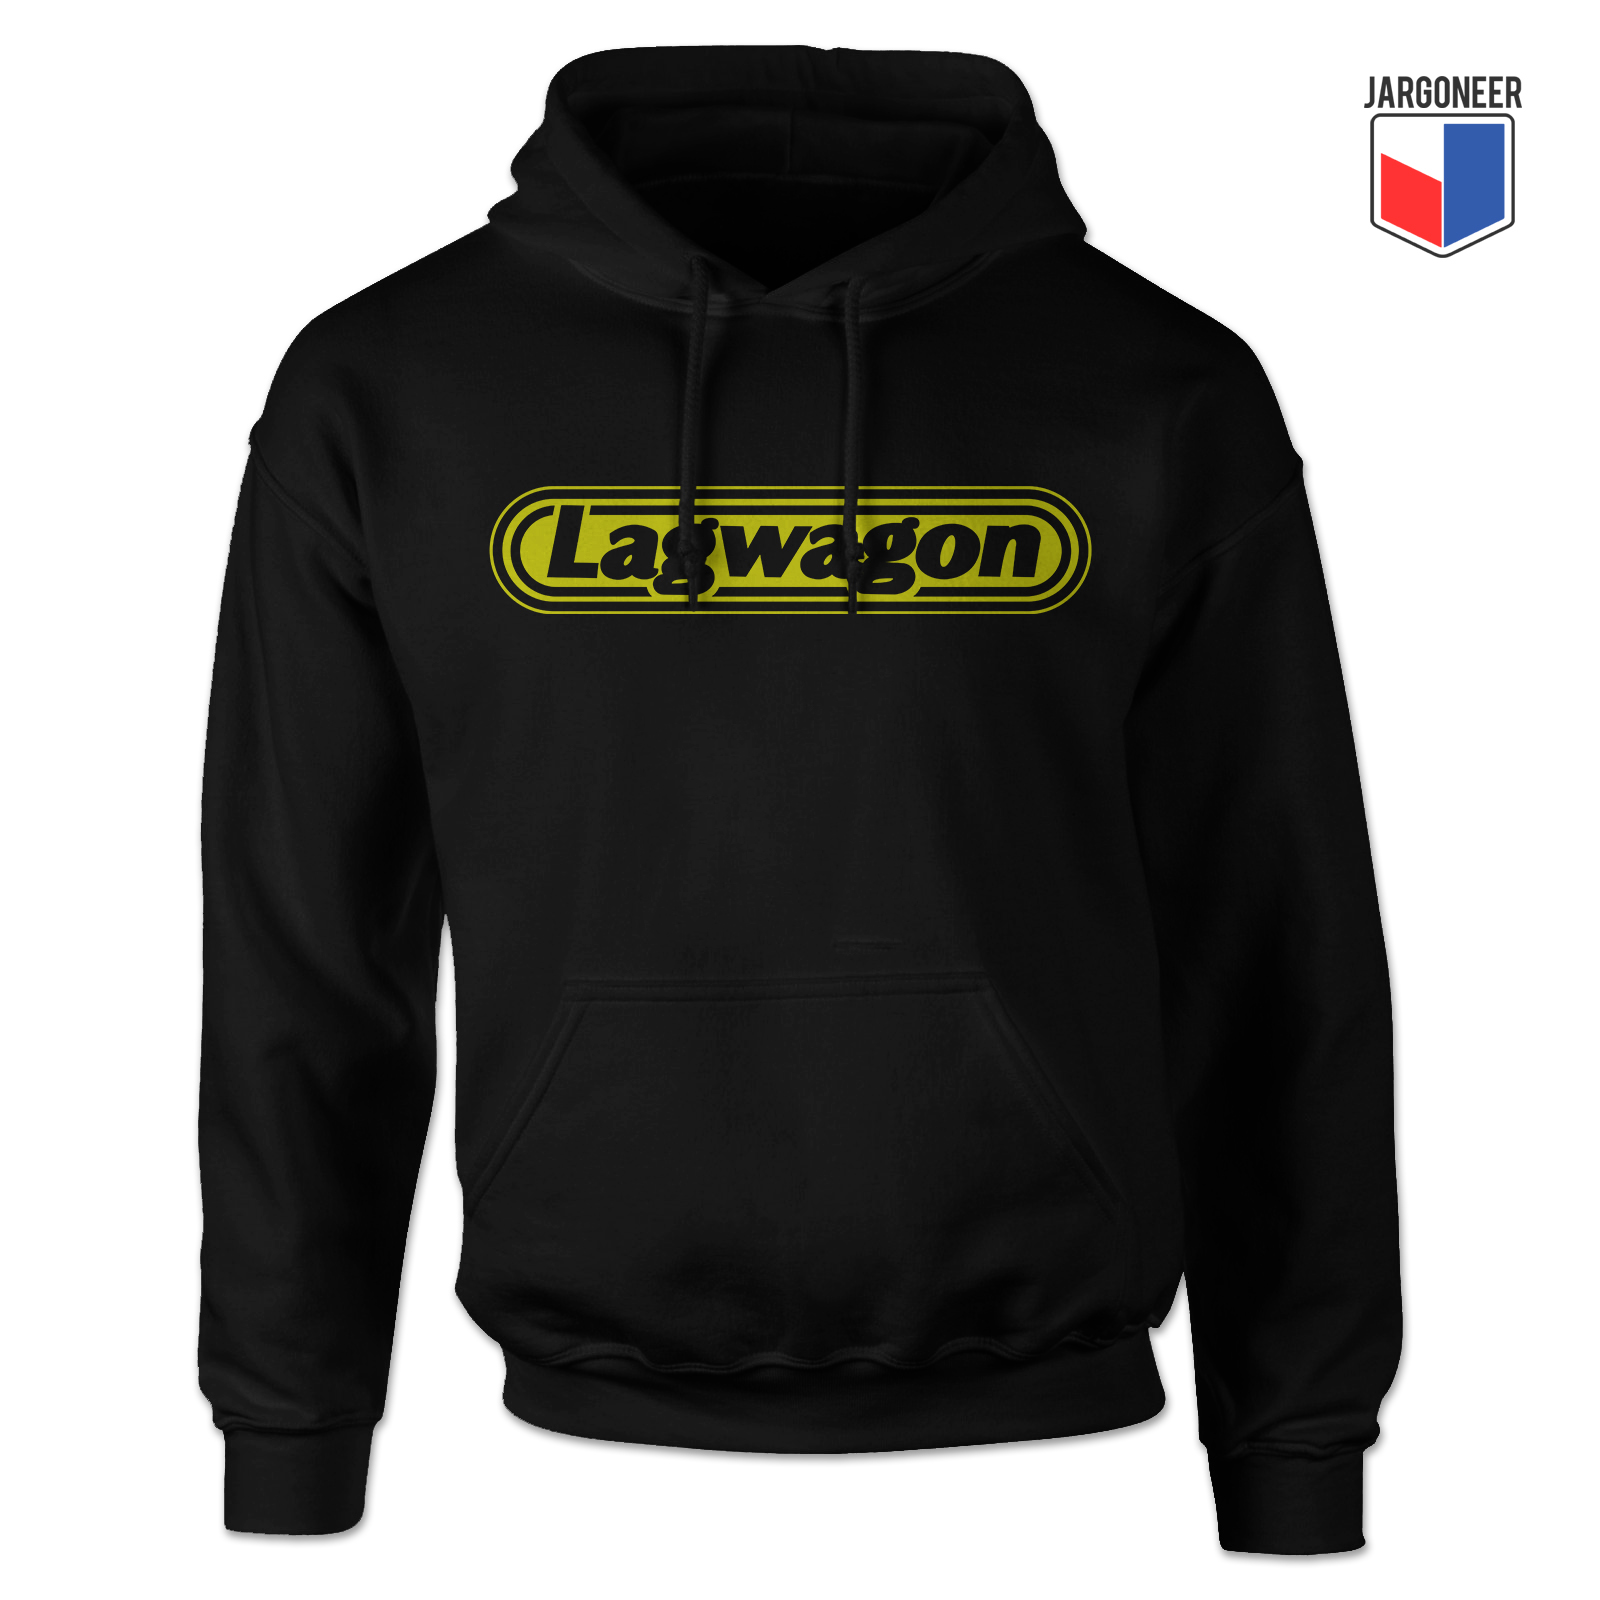 Lagwagon Black Hoody - Shop Unique Graphic Cool Shirt Designs